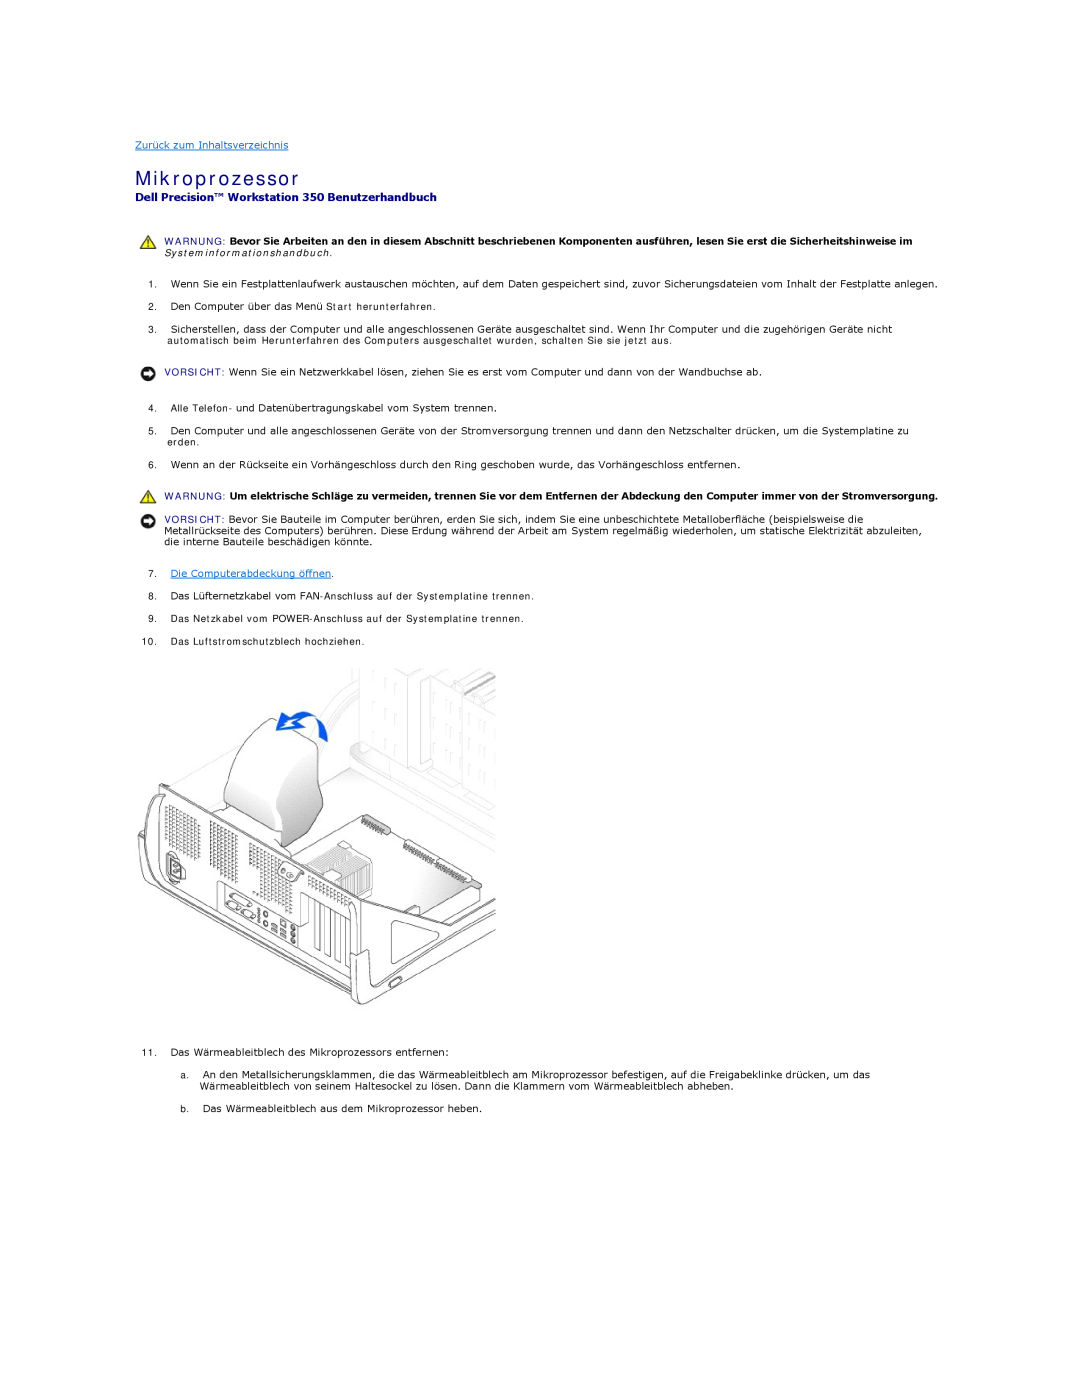 Dell manual Mikroprozessor, Dell Precision Workstation 350 Benutzerhandbuch, Zurück zum Inhaltsverzeichnis 